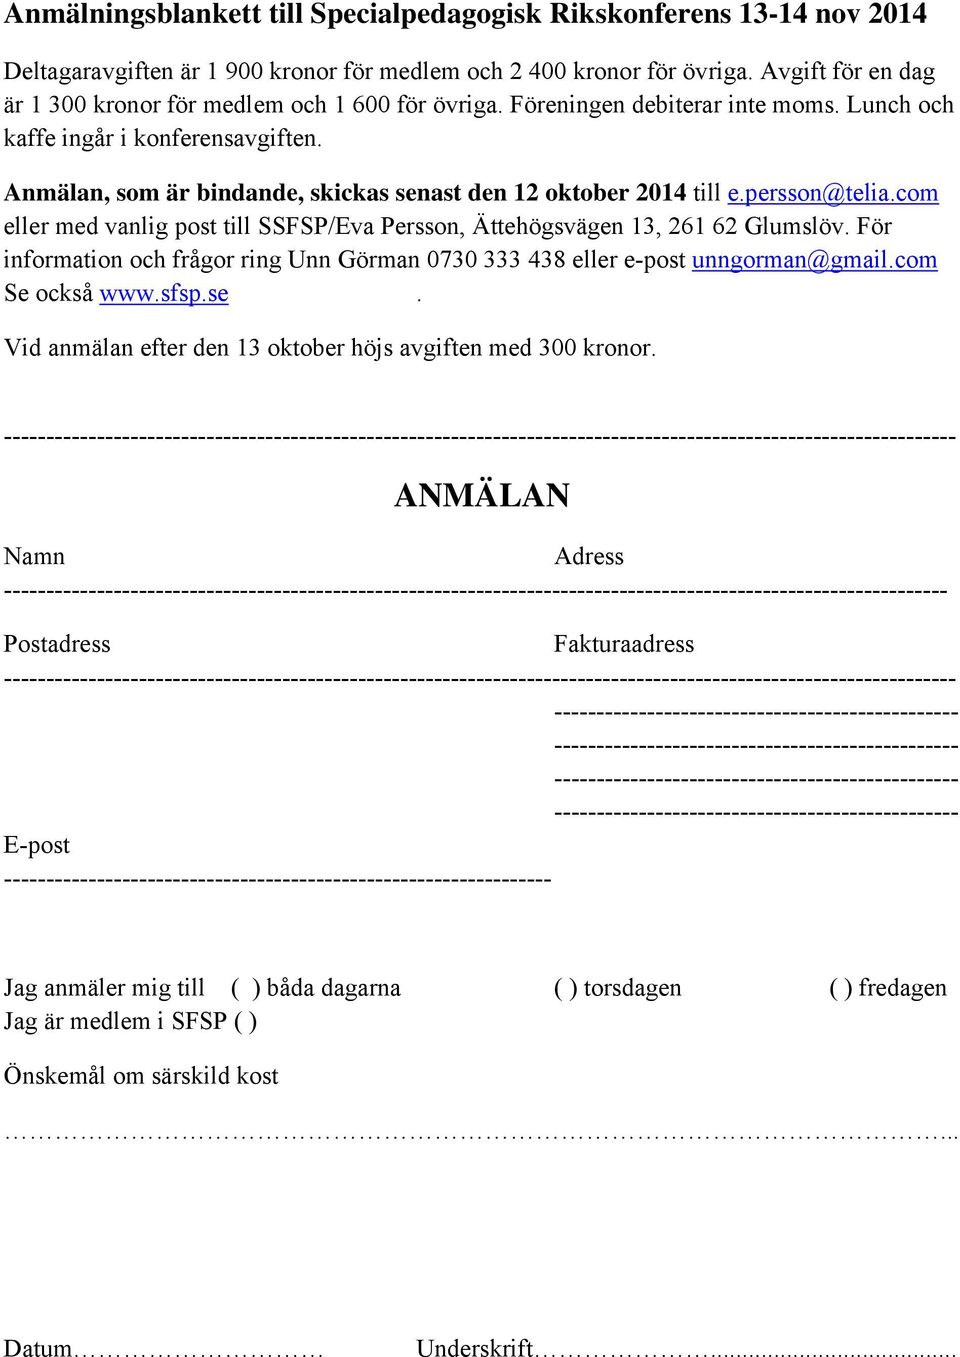 Anmälan, som är bindande, skickas senast den 12 oktober 2014 till e.persson@telia.com eller med vanlig post till SSFSP/Eva Persson, Ättehögsvägen 13, 261 62 Glumslöv.